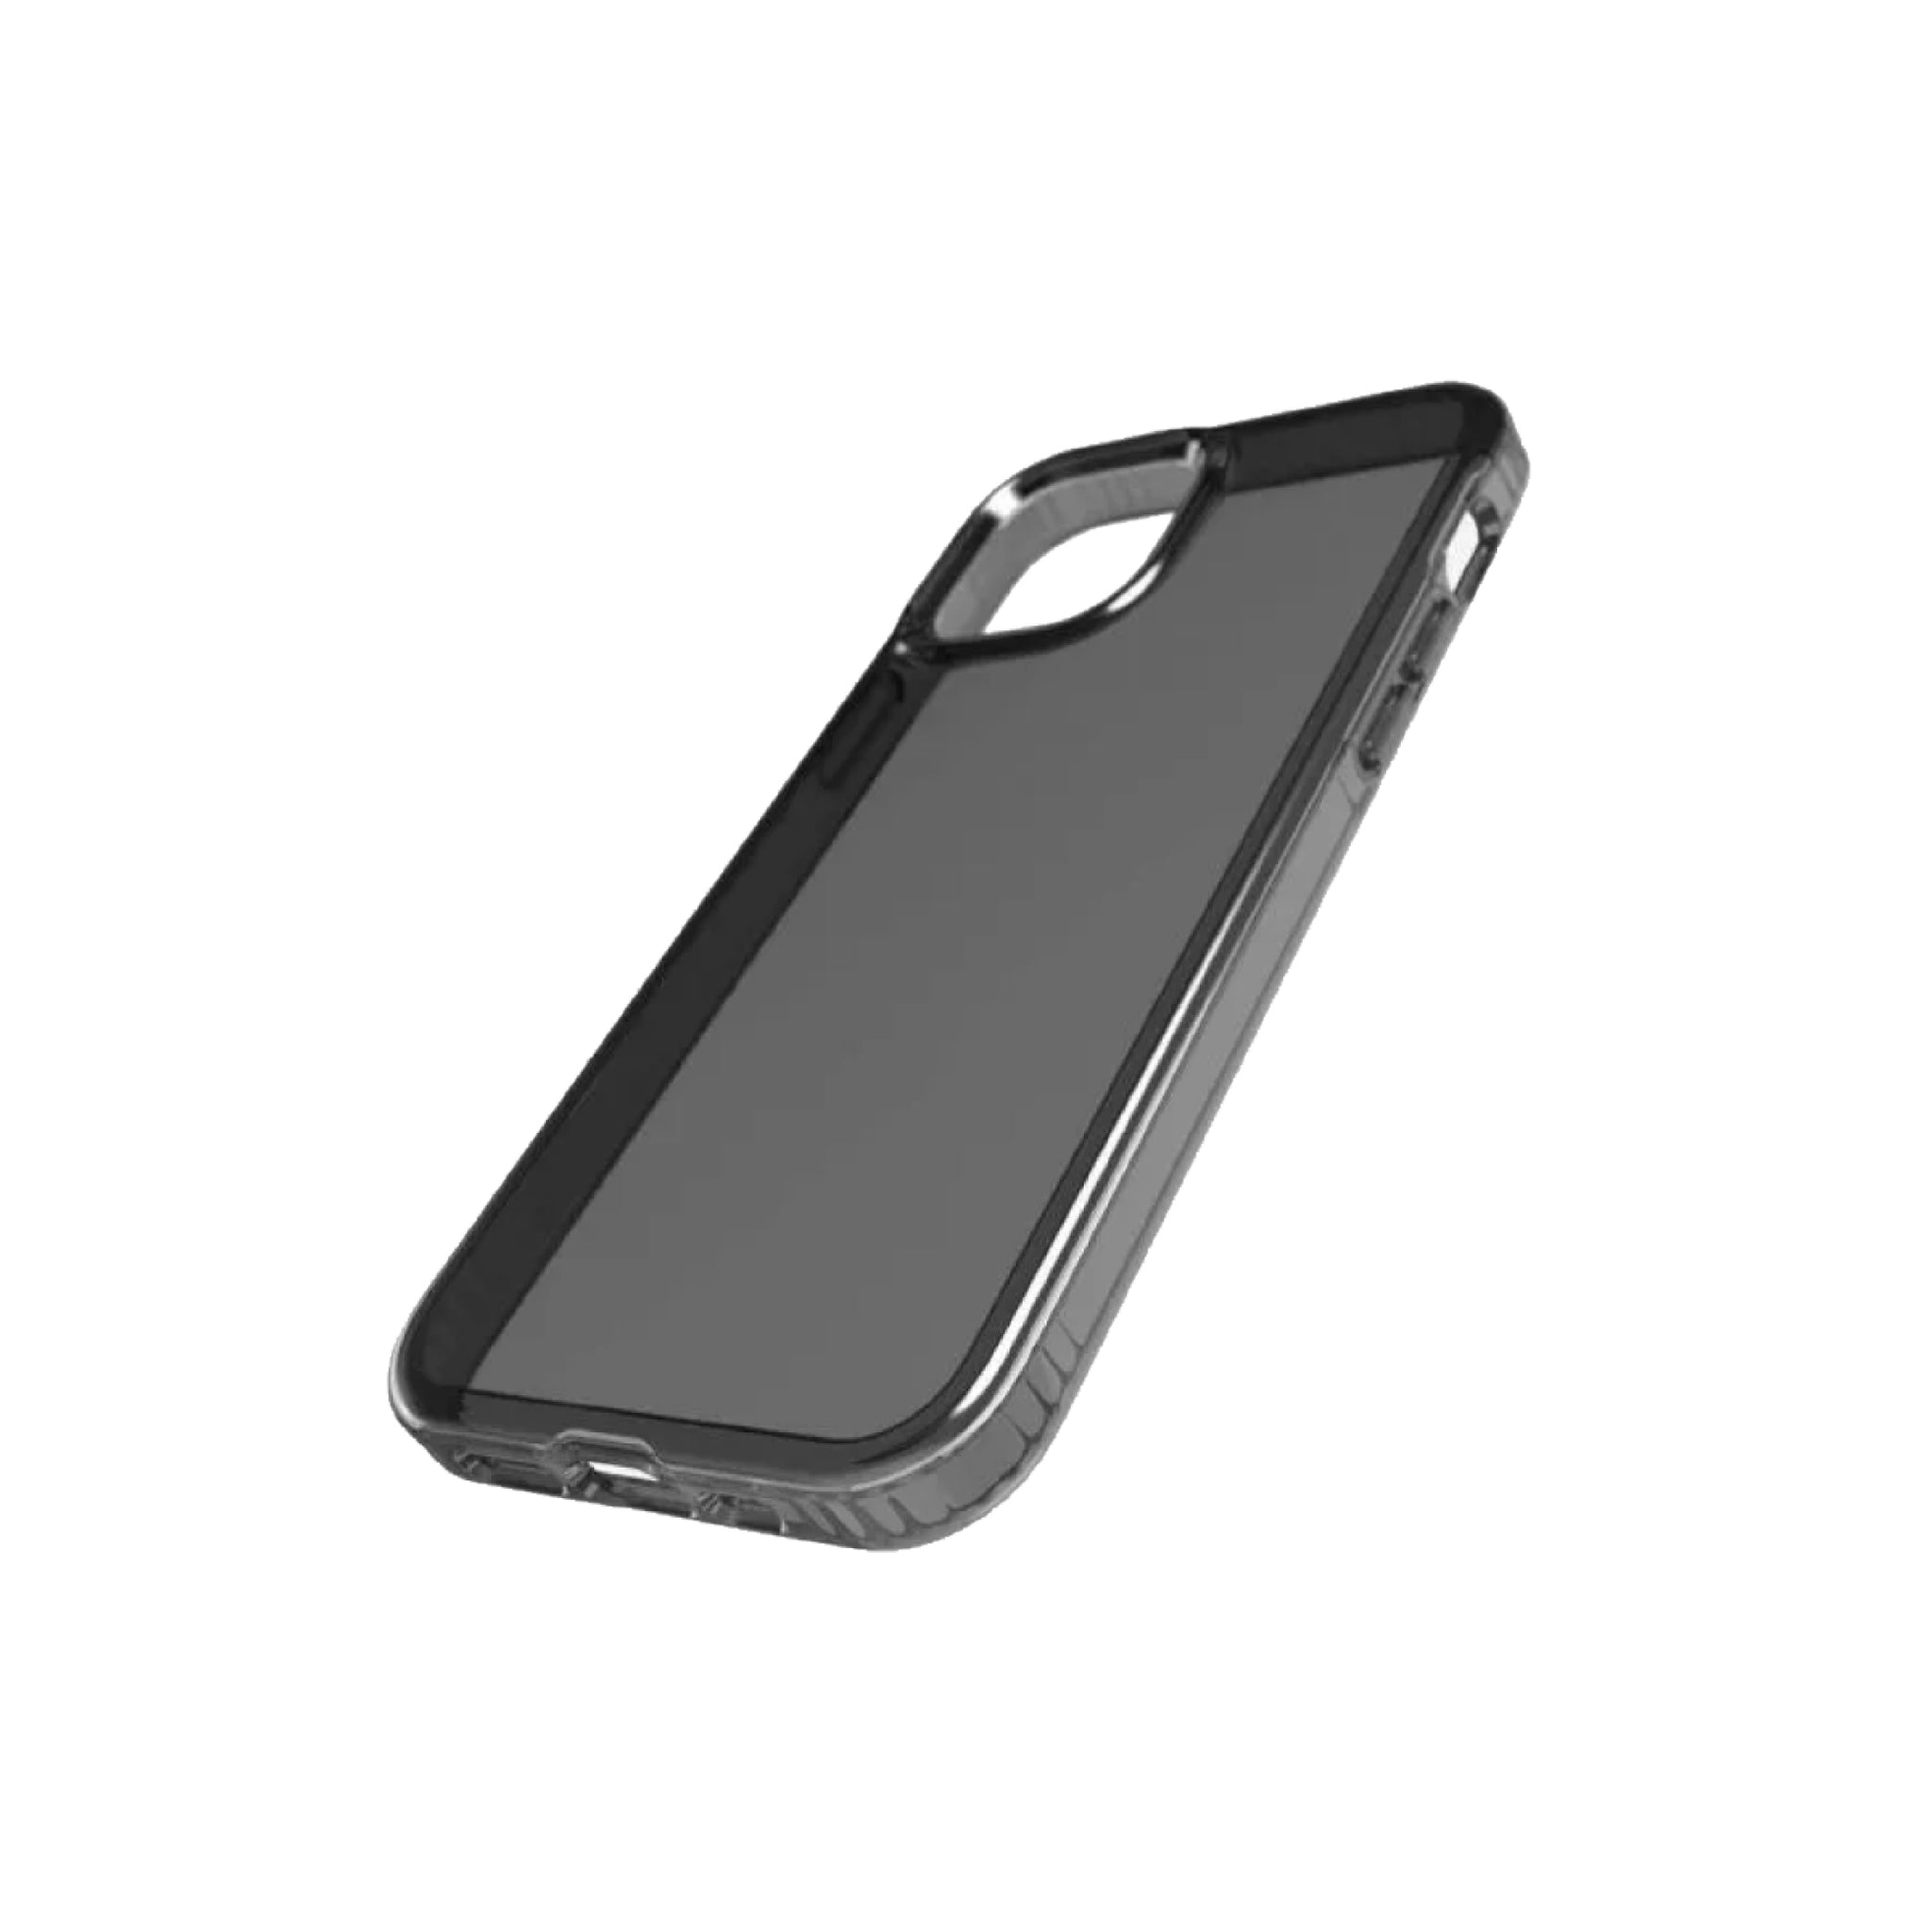 Quikcell Funda para iPhone 12 Mini Transparente – Celular Express